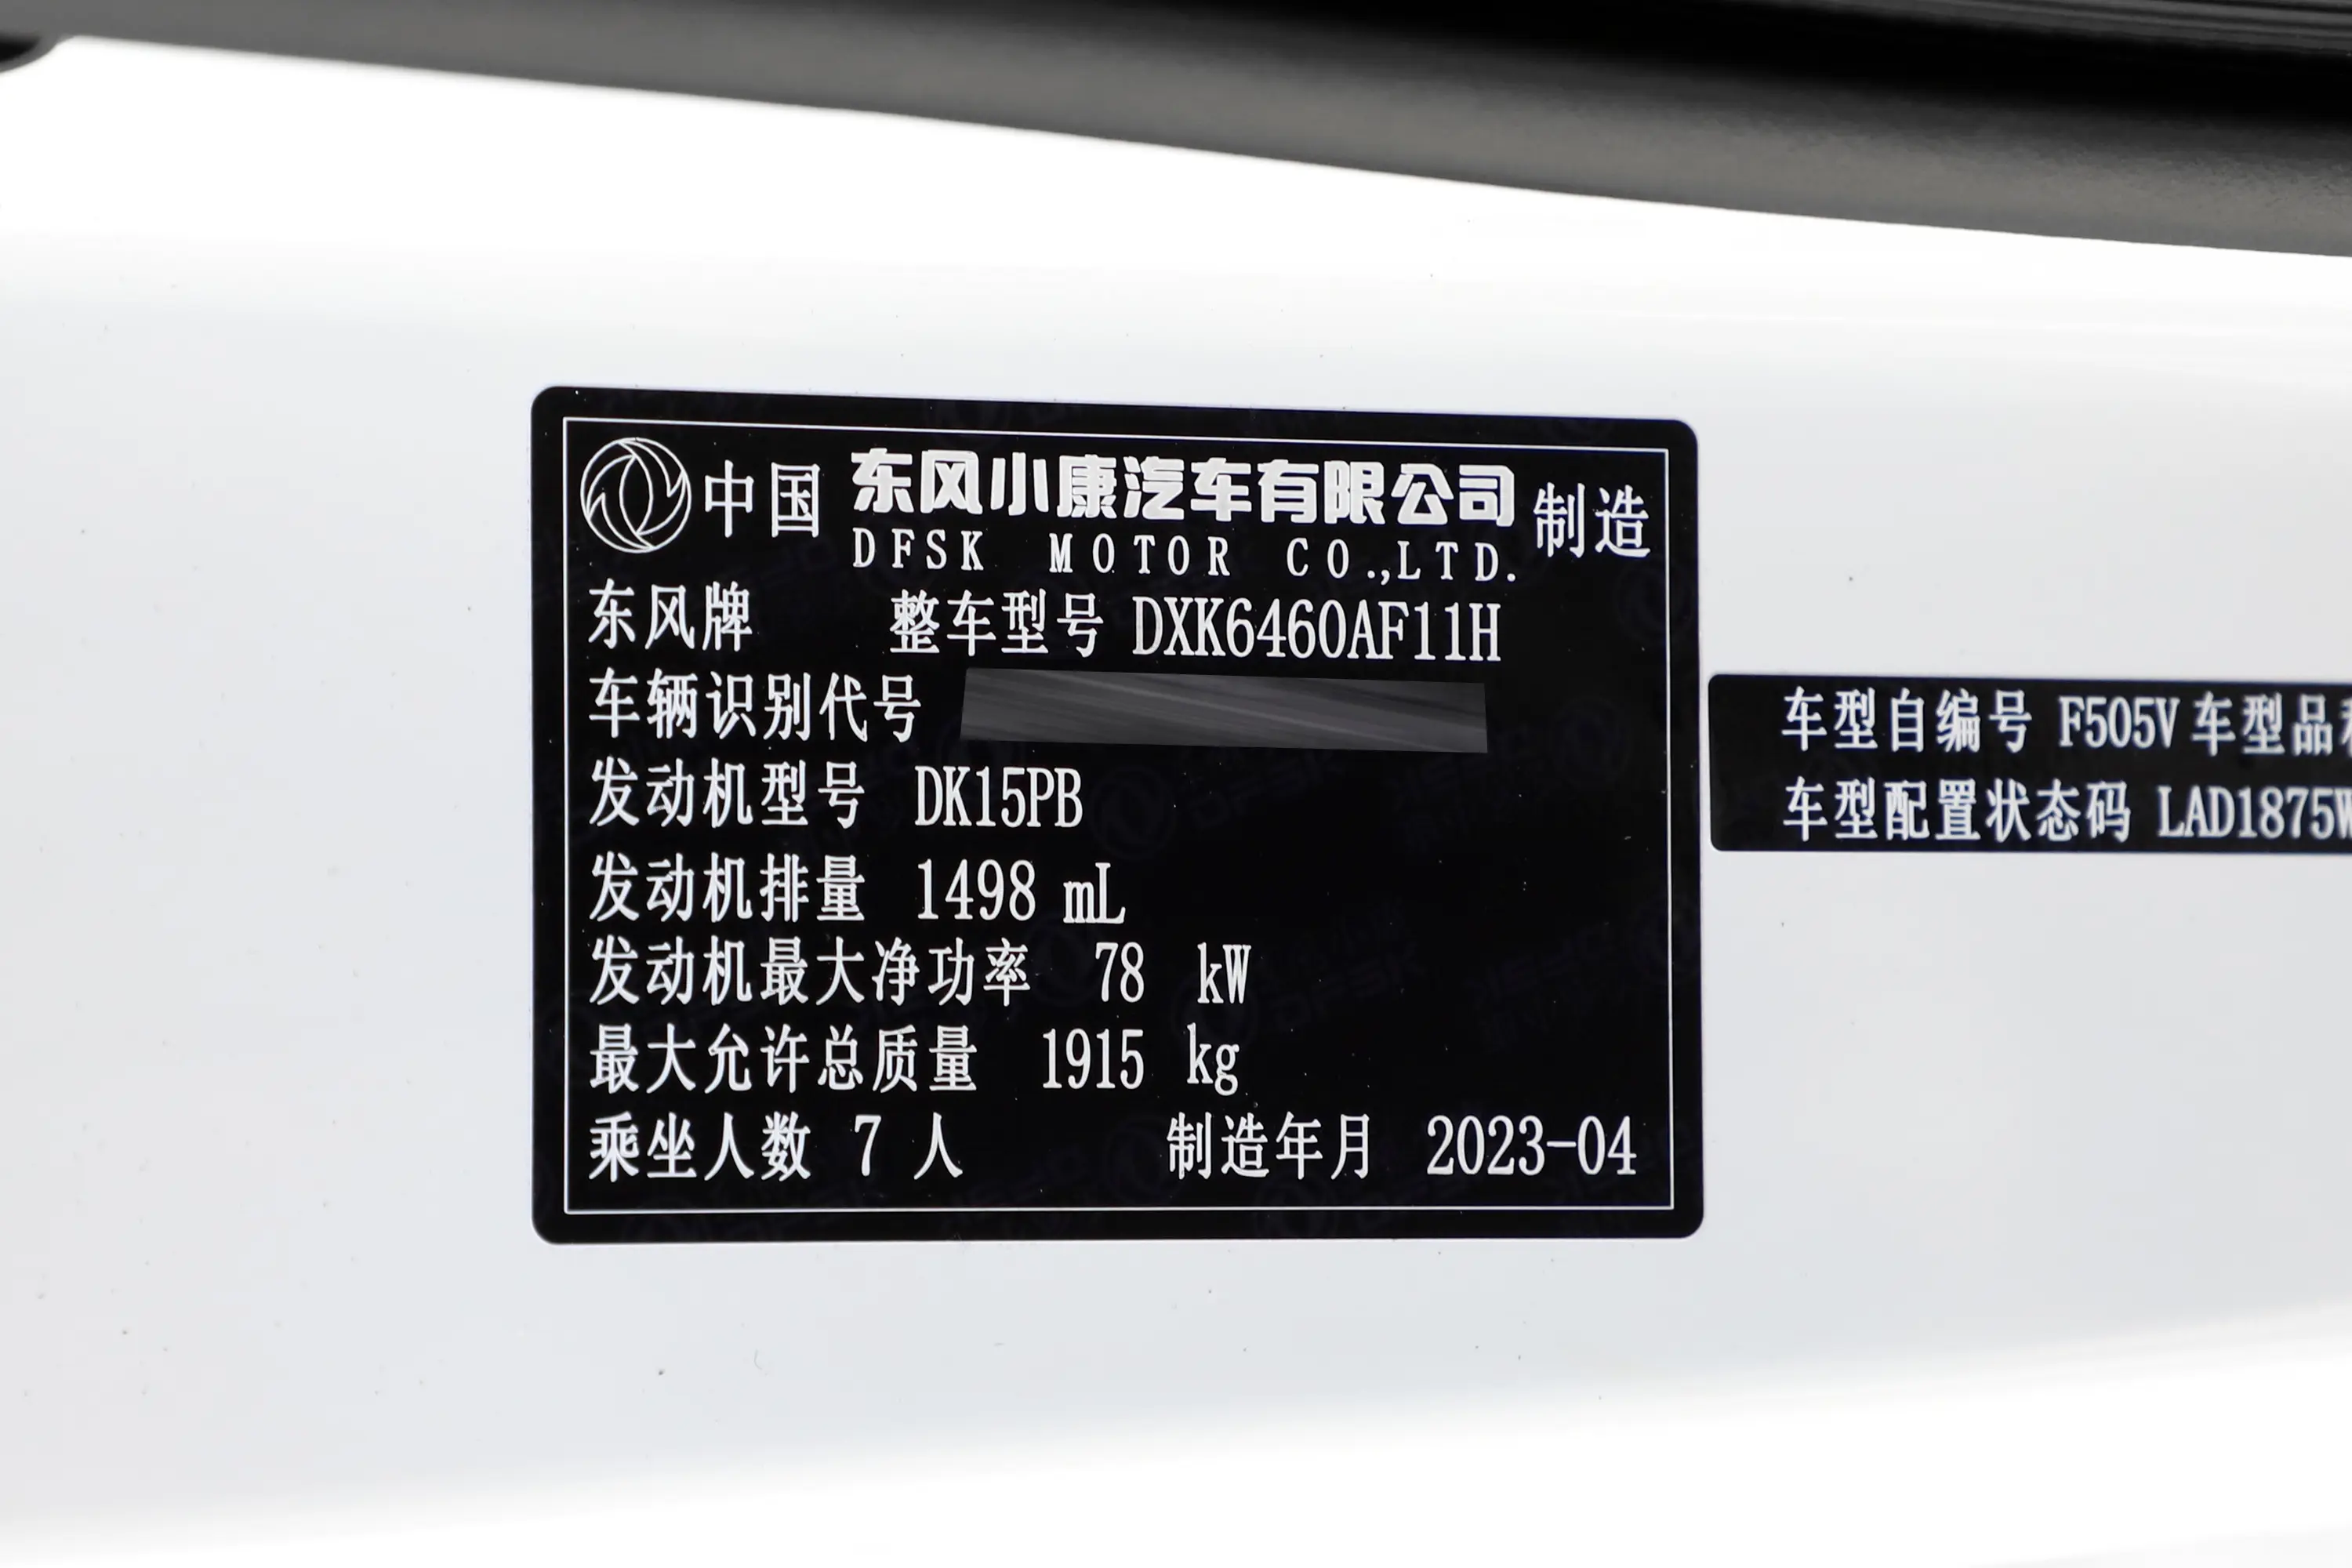 风光380客车 1.5L 舒适型(螺旋簧) 7座车辆信息铭牌